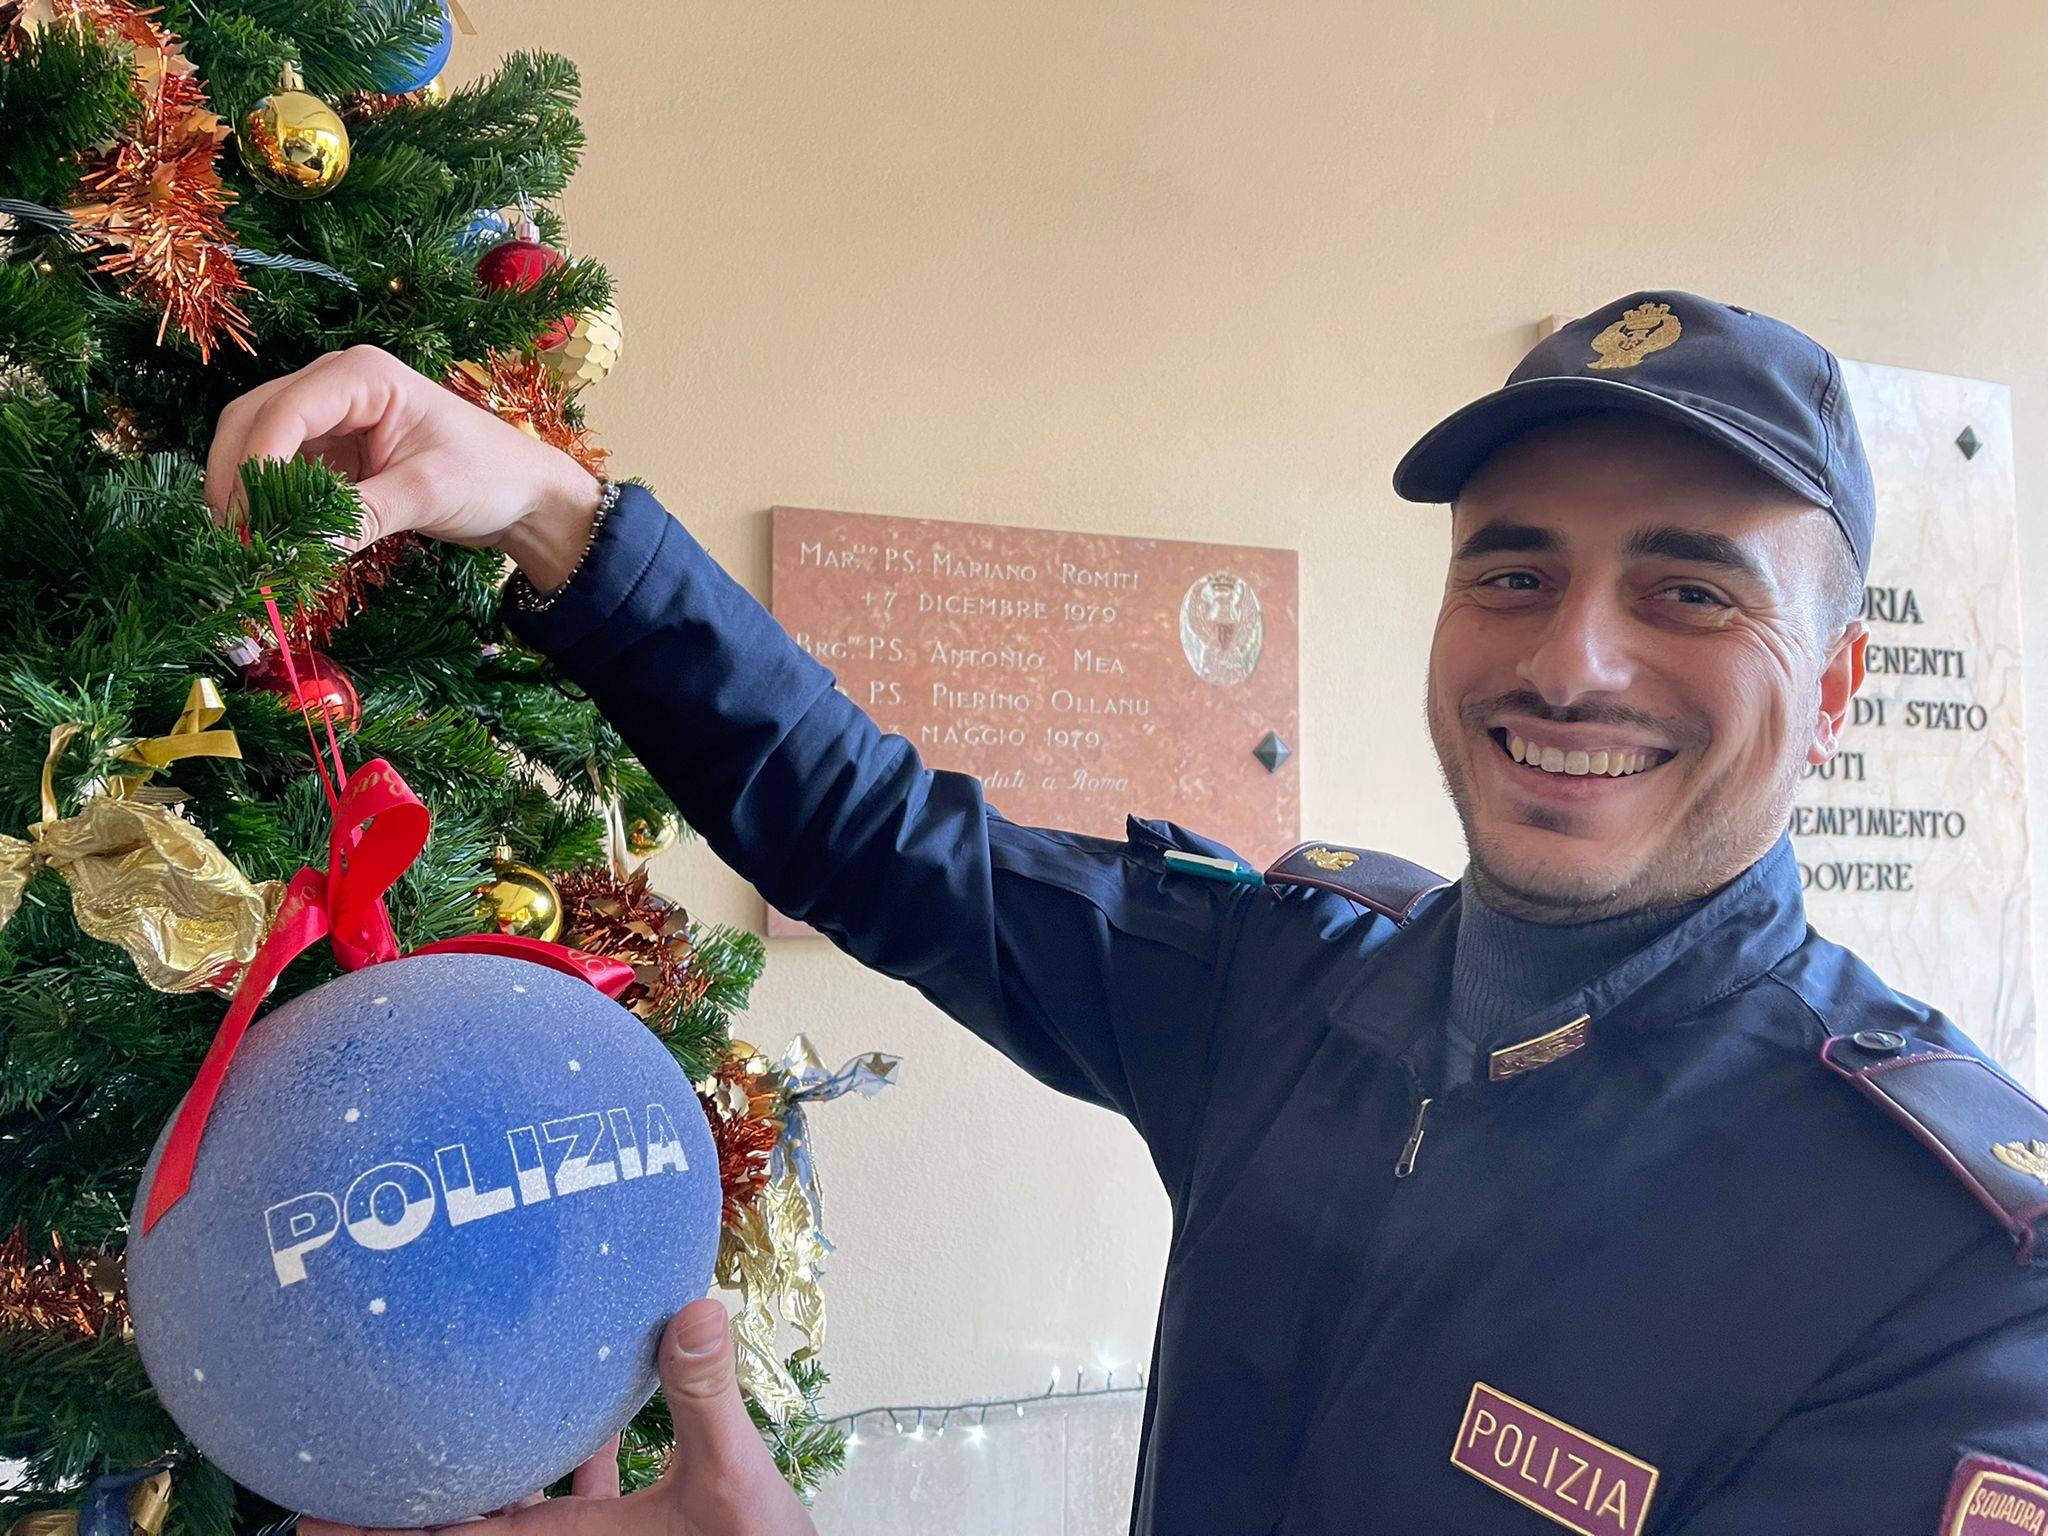 Gli alberi di Natale nelle città d’Italia con le decorazioni natalizie della Polizia di Stato: Parma